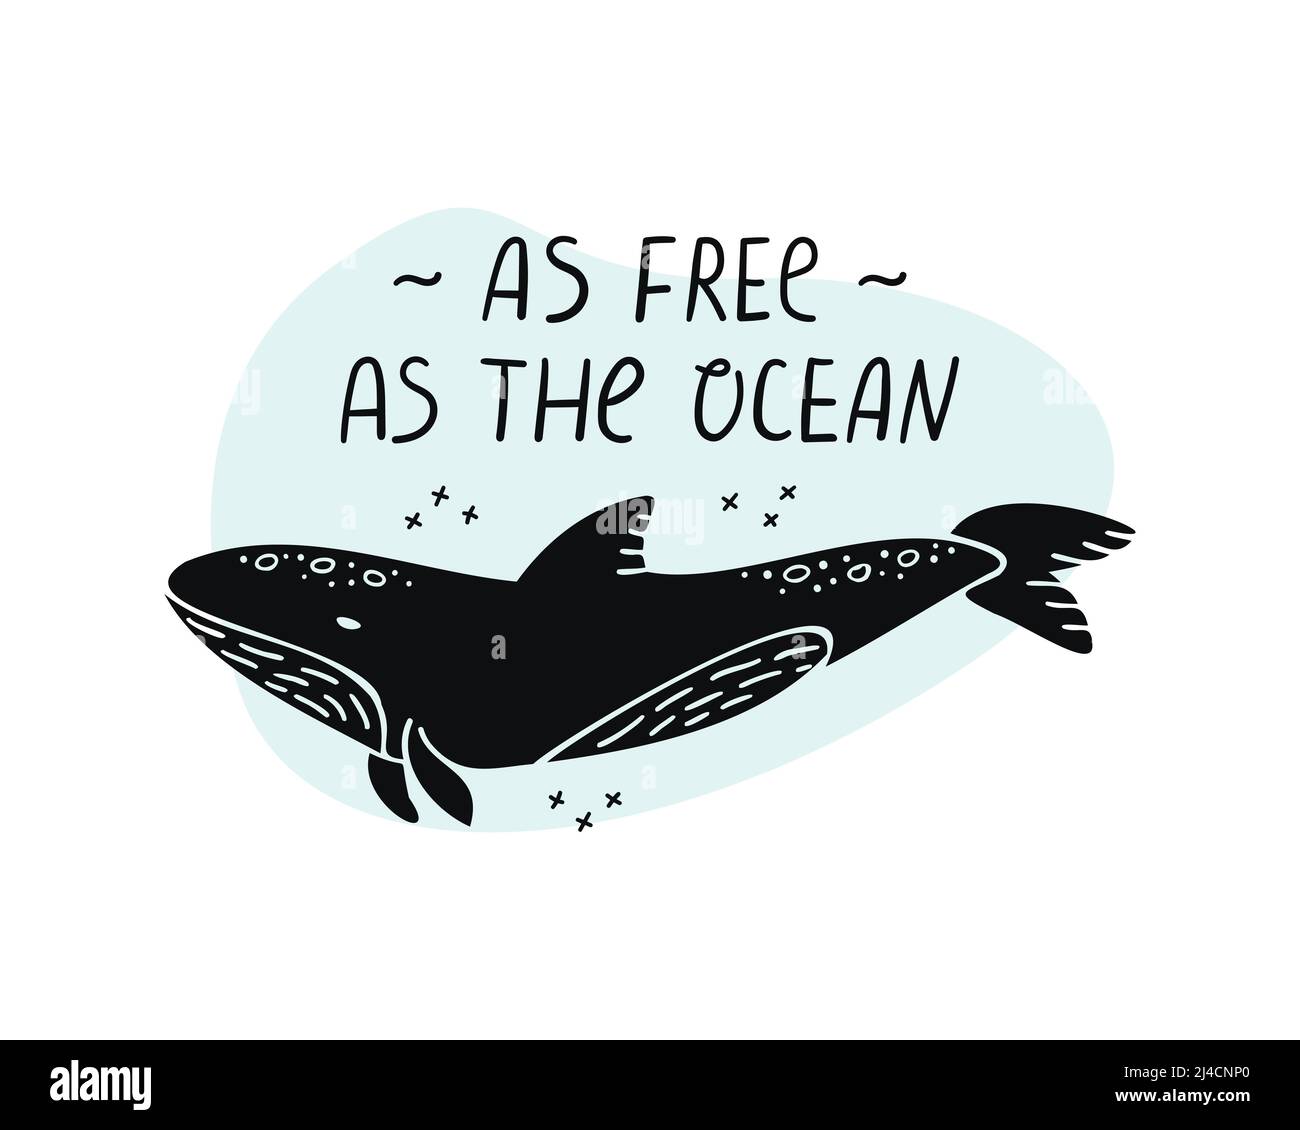 Illustration vectorielle d'une baleine avec des lettres dessinées à la main - aussi libre que l'océan. Illustration de Vecteur